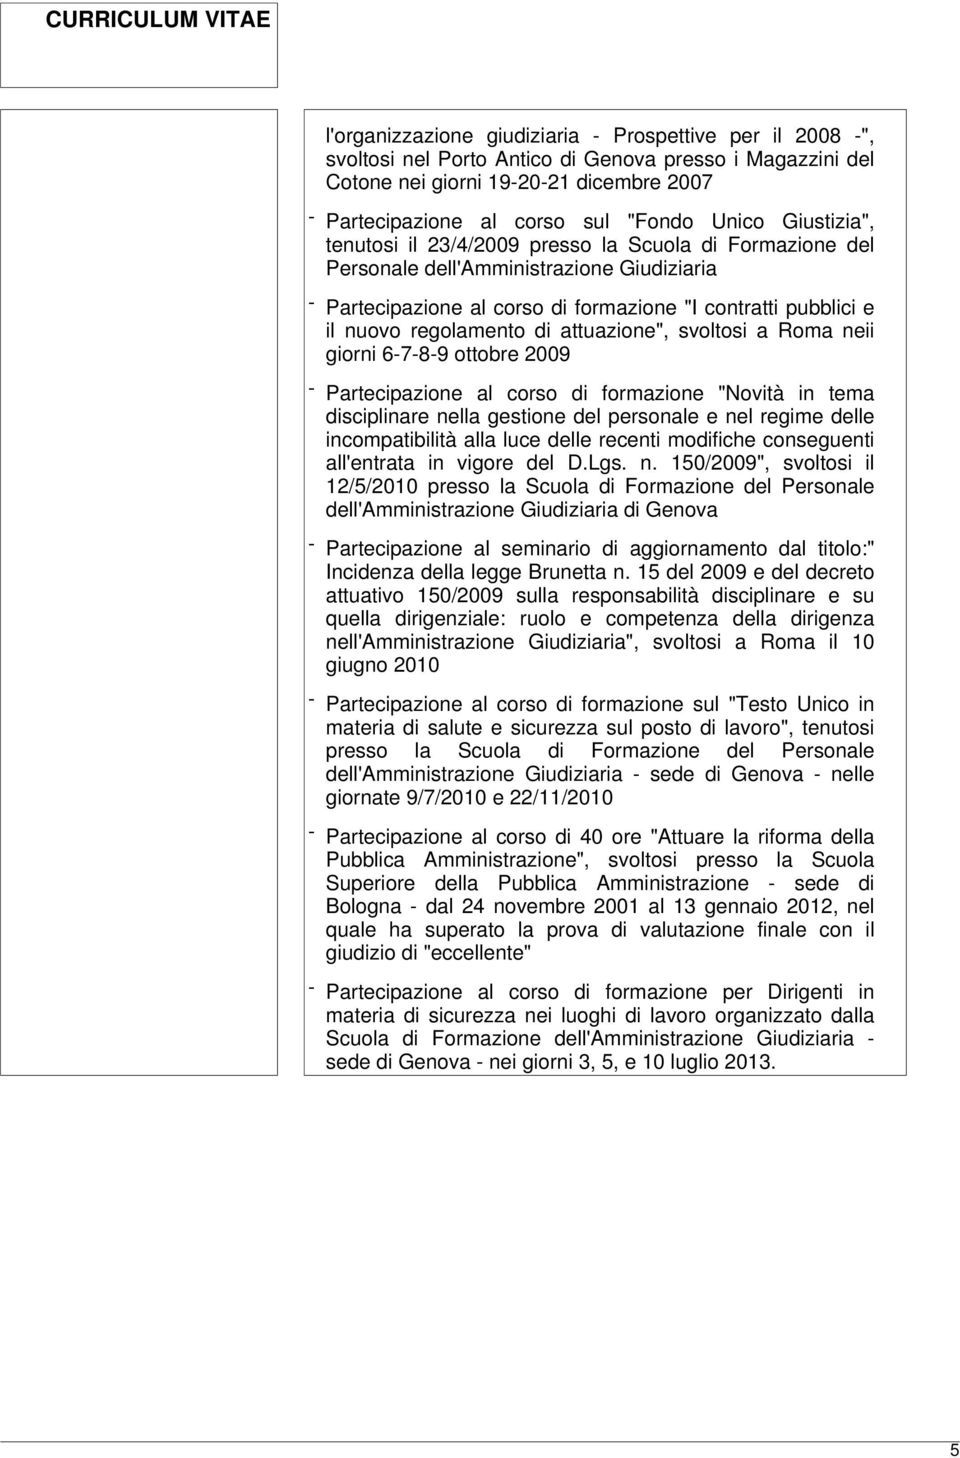 regolamento di attuazione", svoltosi a Roma neii giorni 6-7-8-9 ottobre 2009 - Partecipazione al corso di formazione "Novità in tema disciplinare nella gestione del personale e nel regime delle